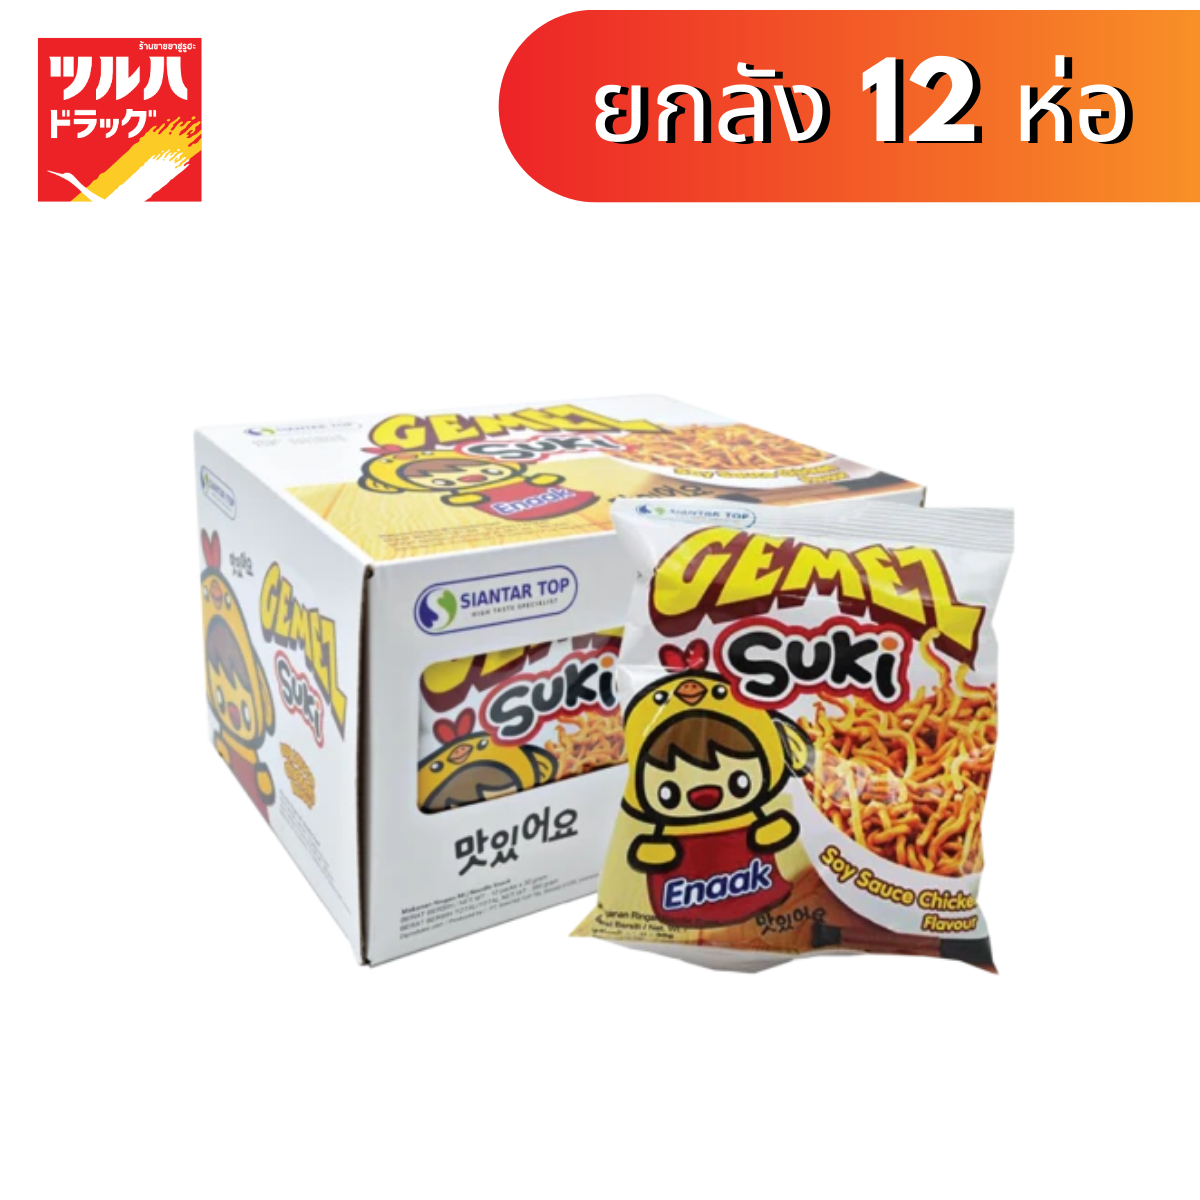 [ยกลัง 12 ห่อ] Gemez Suki Soy Sauce Chicken Flavour Snack 30g. / เกเมซ ซูกิ ขนมบะหมี่กรอบปรุงรสไก่ 30g.